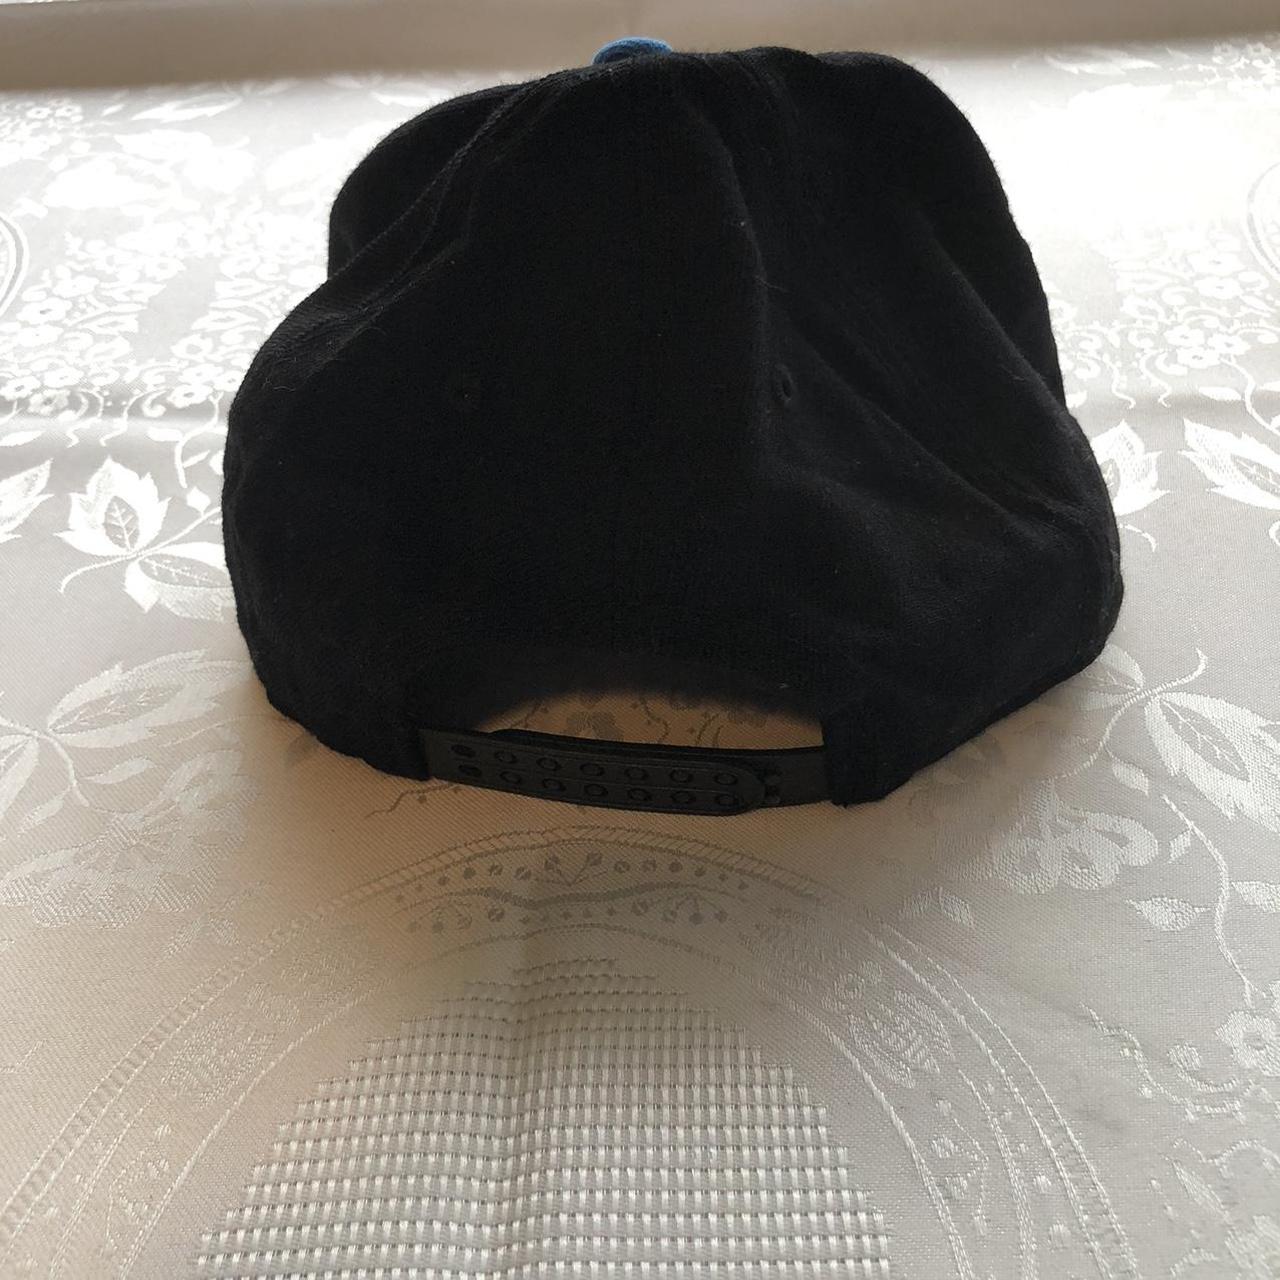 Product Image 4 - Nike Men’s Black/Blue Vintage Hat